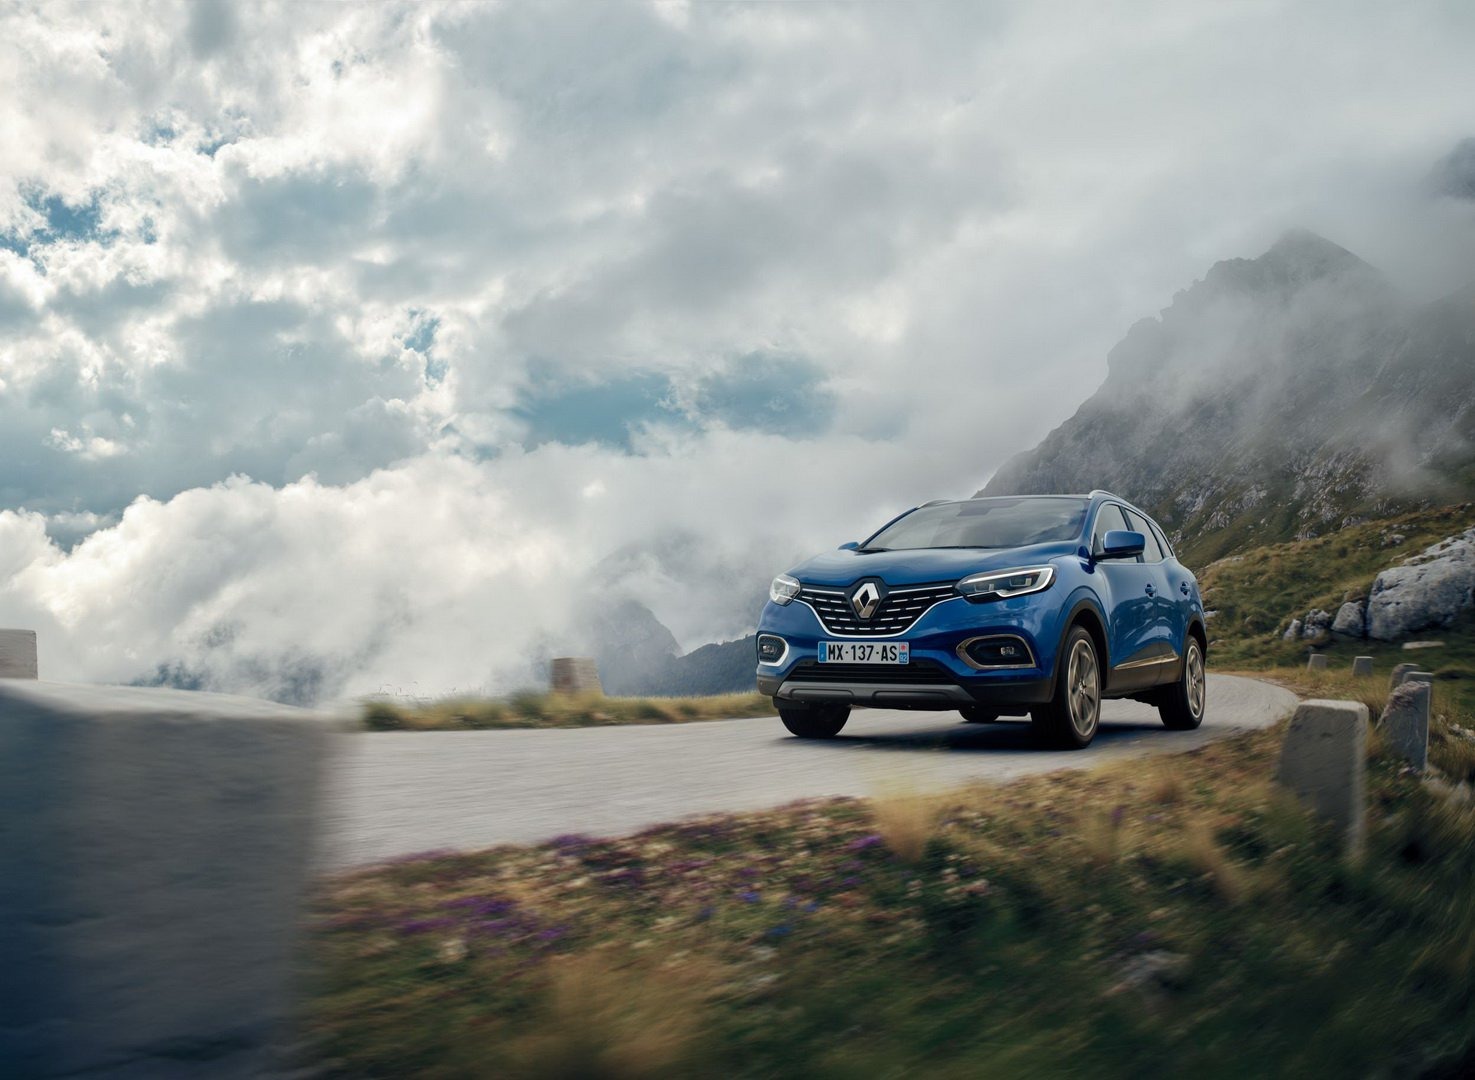 2019 Renault Kadjar yeni 1.3 litre benzinli motoruyla tanıtıldı